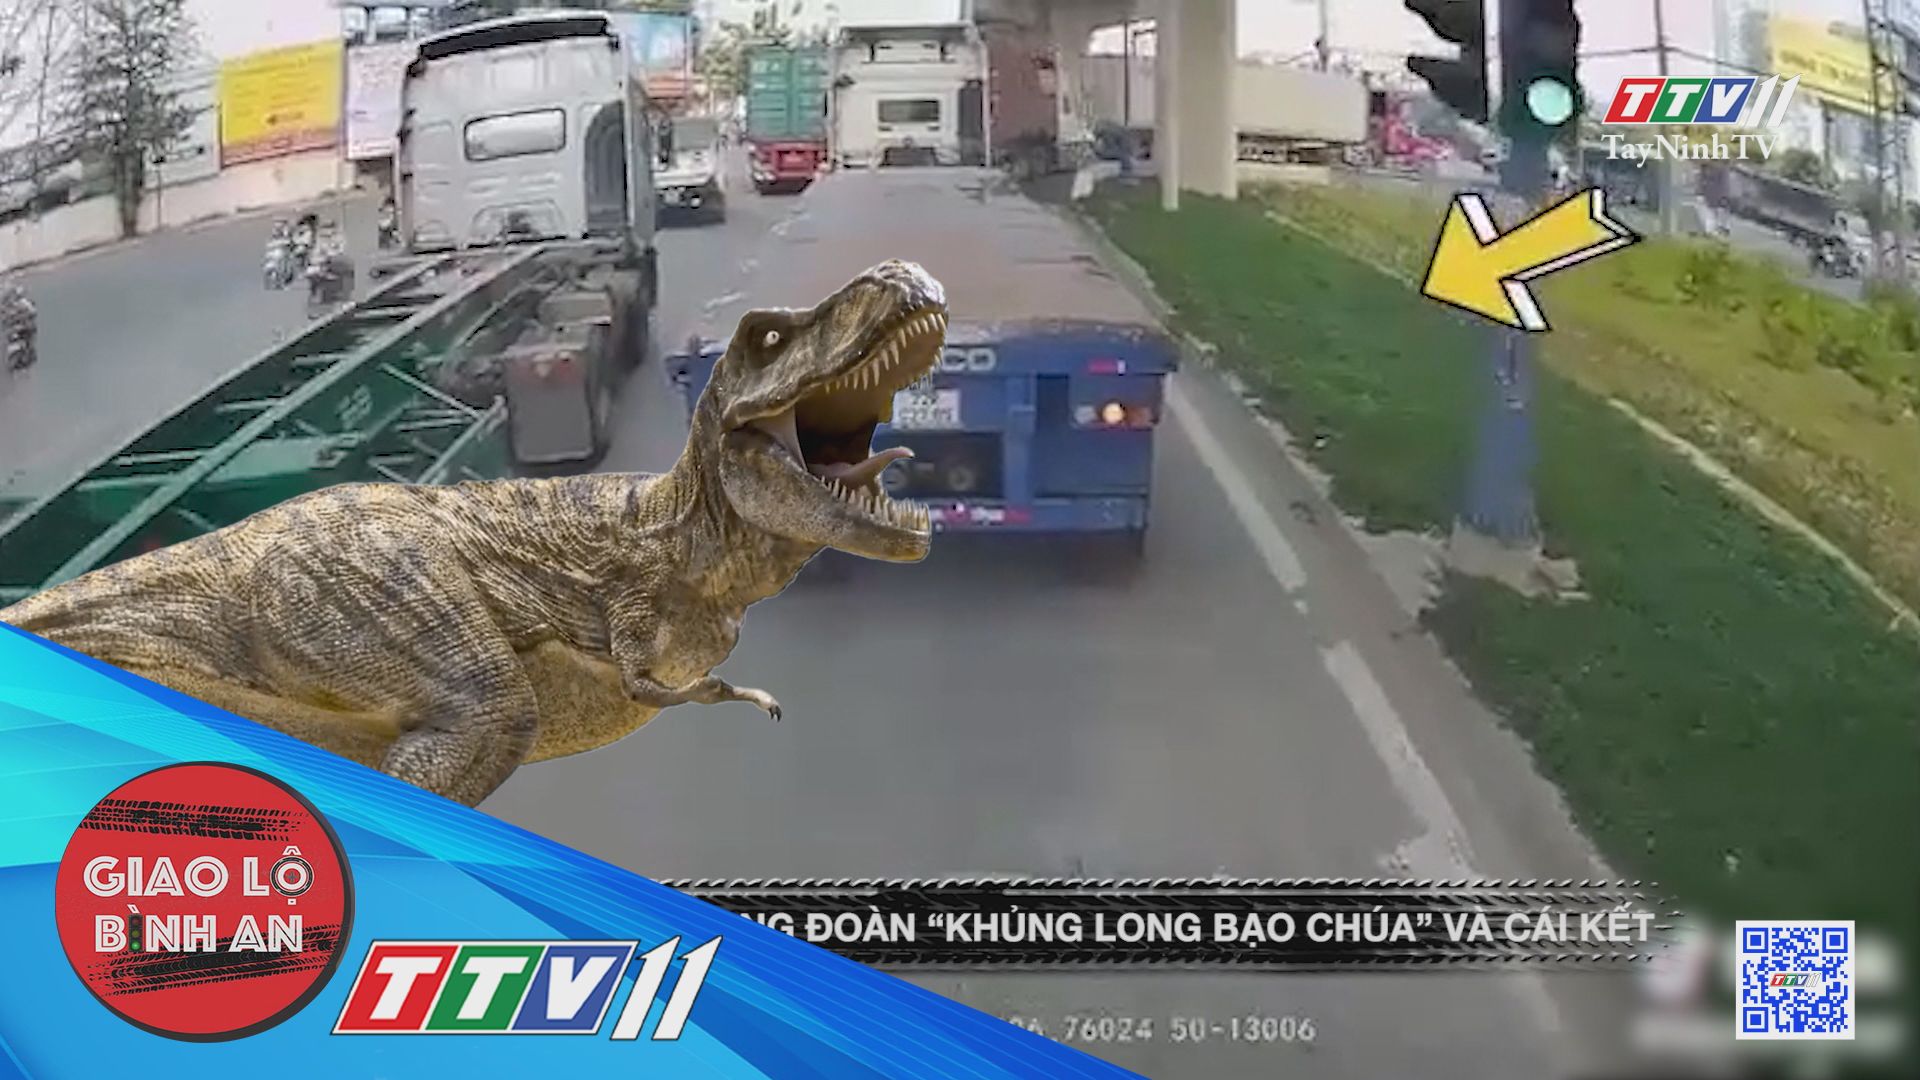 Loi choi trong đoàn khủng long bạo chúa và cái kết | Giao lộ bình an | TayNinhTV